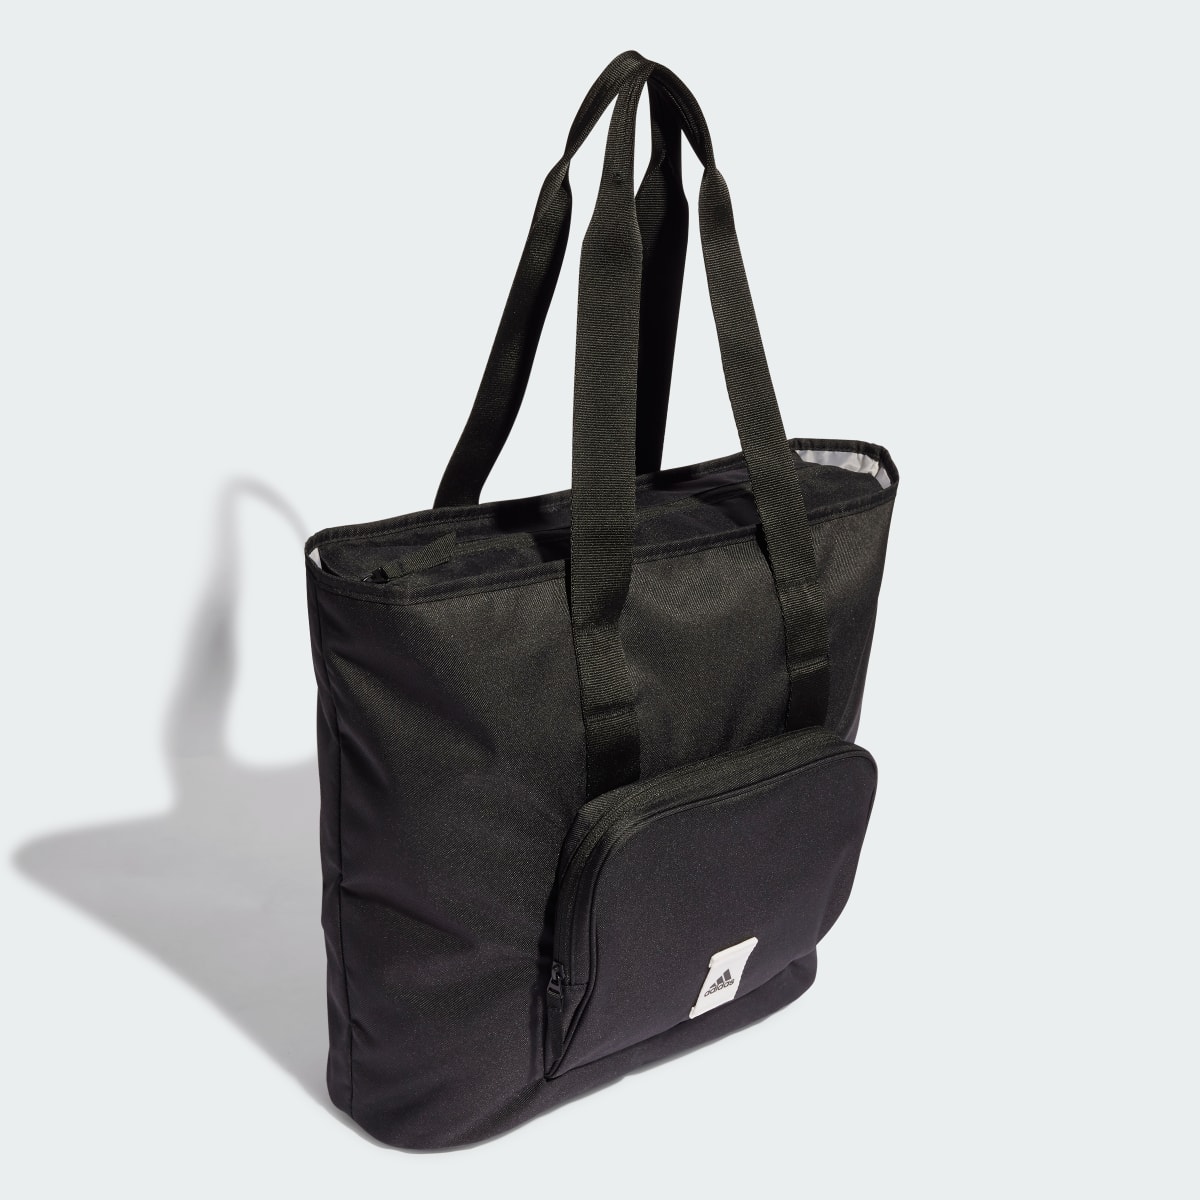 Adidas Tote Bag Prime. 4